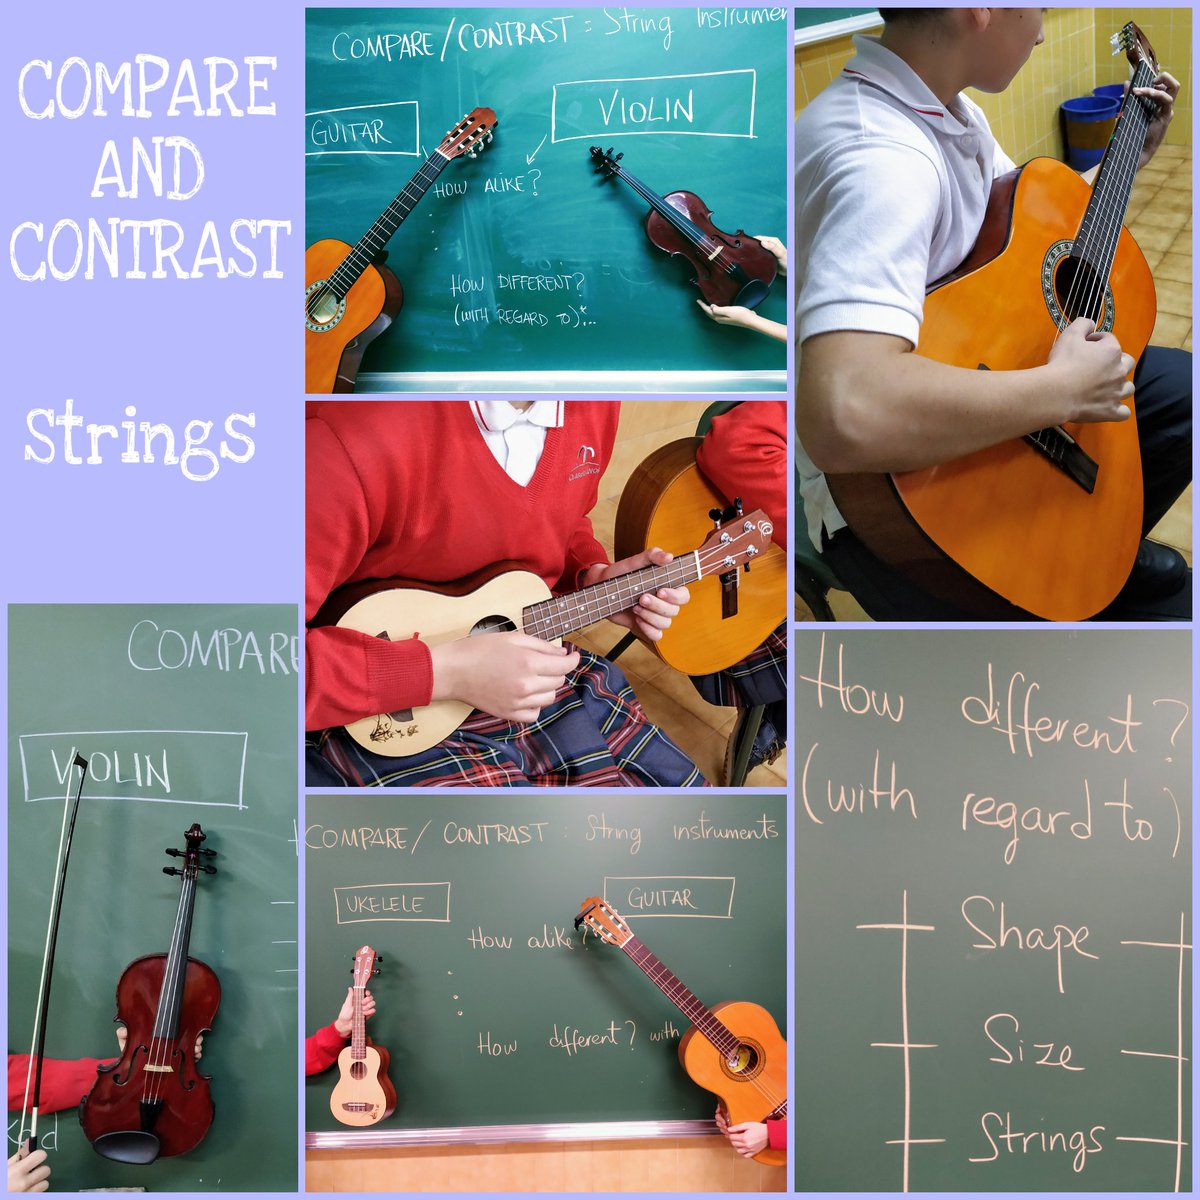 Esta semana en 1eso, gracias a la colaboración de los alumnos hemos trabajado el organizador Compara-Contrasta en riguroso directo!! 🎶 @codemagijon #graphicorganizer #compareandcontrast #stringinstruments #violin #guitar #ukelele #livemusic #codemamusic